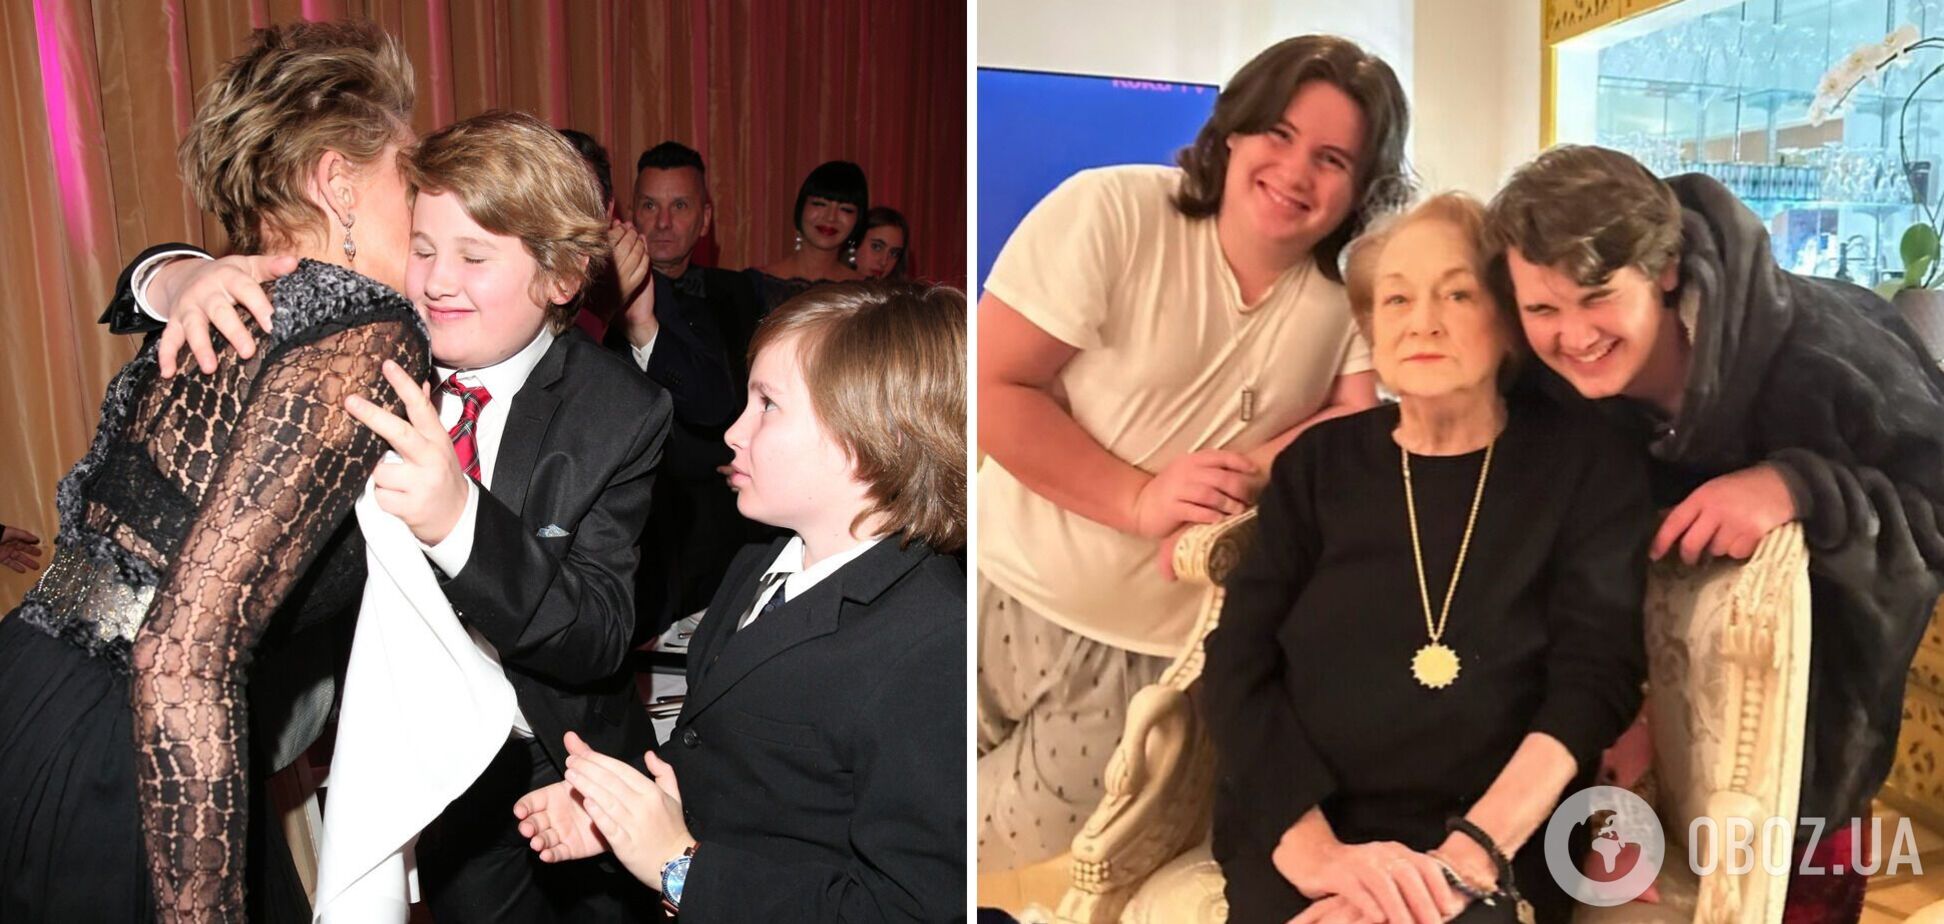 Шэрон Стоун на редких фото показала младших сыновей, которых усыновила более 16 лет назад: актриса долго прятала их от фанатов